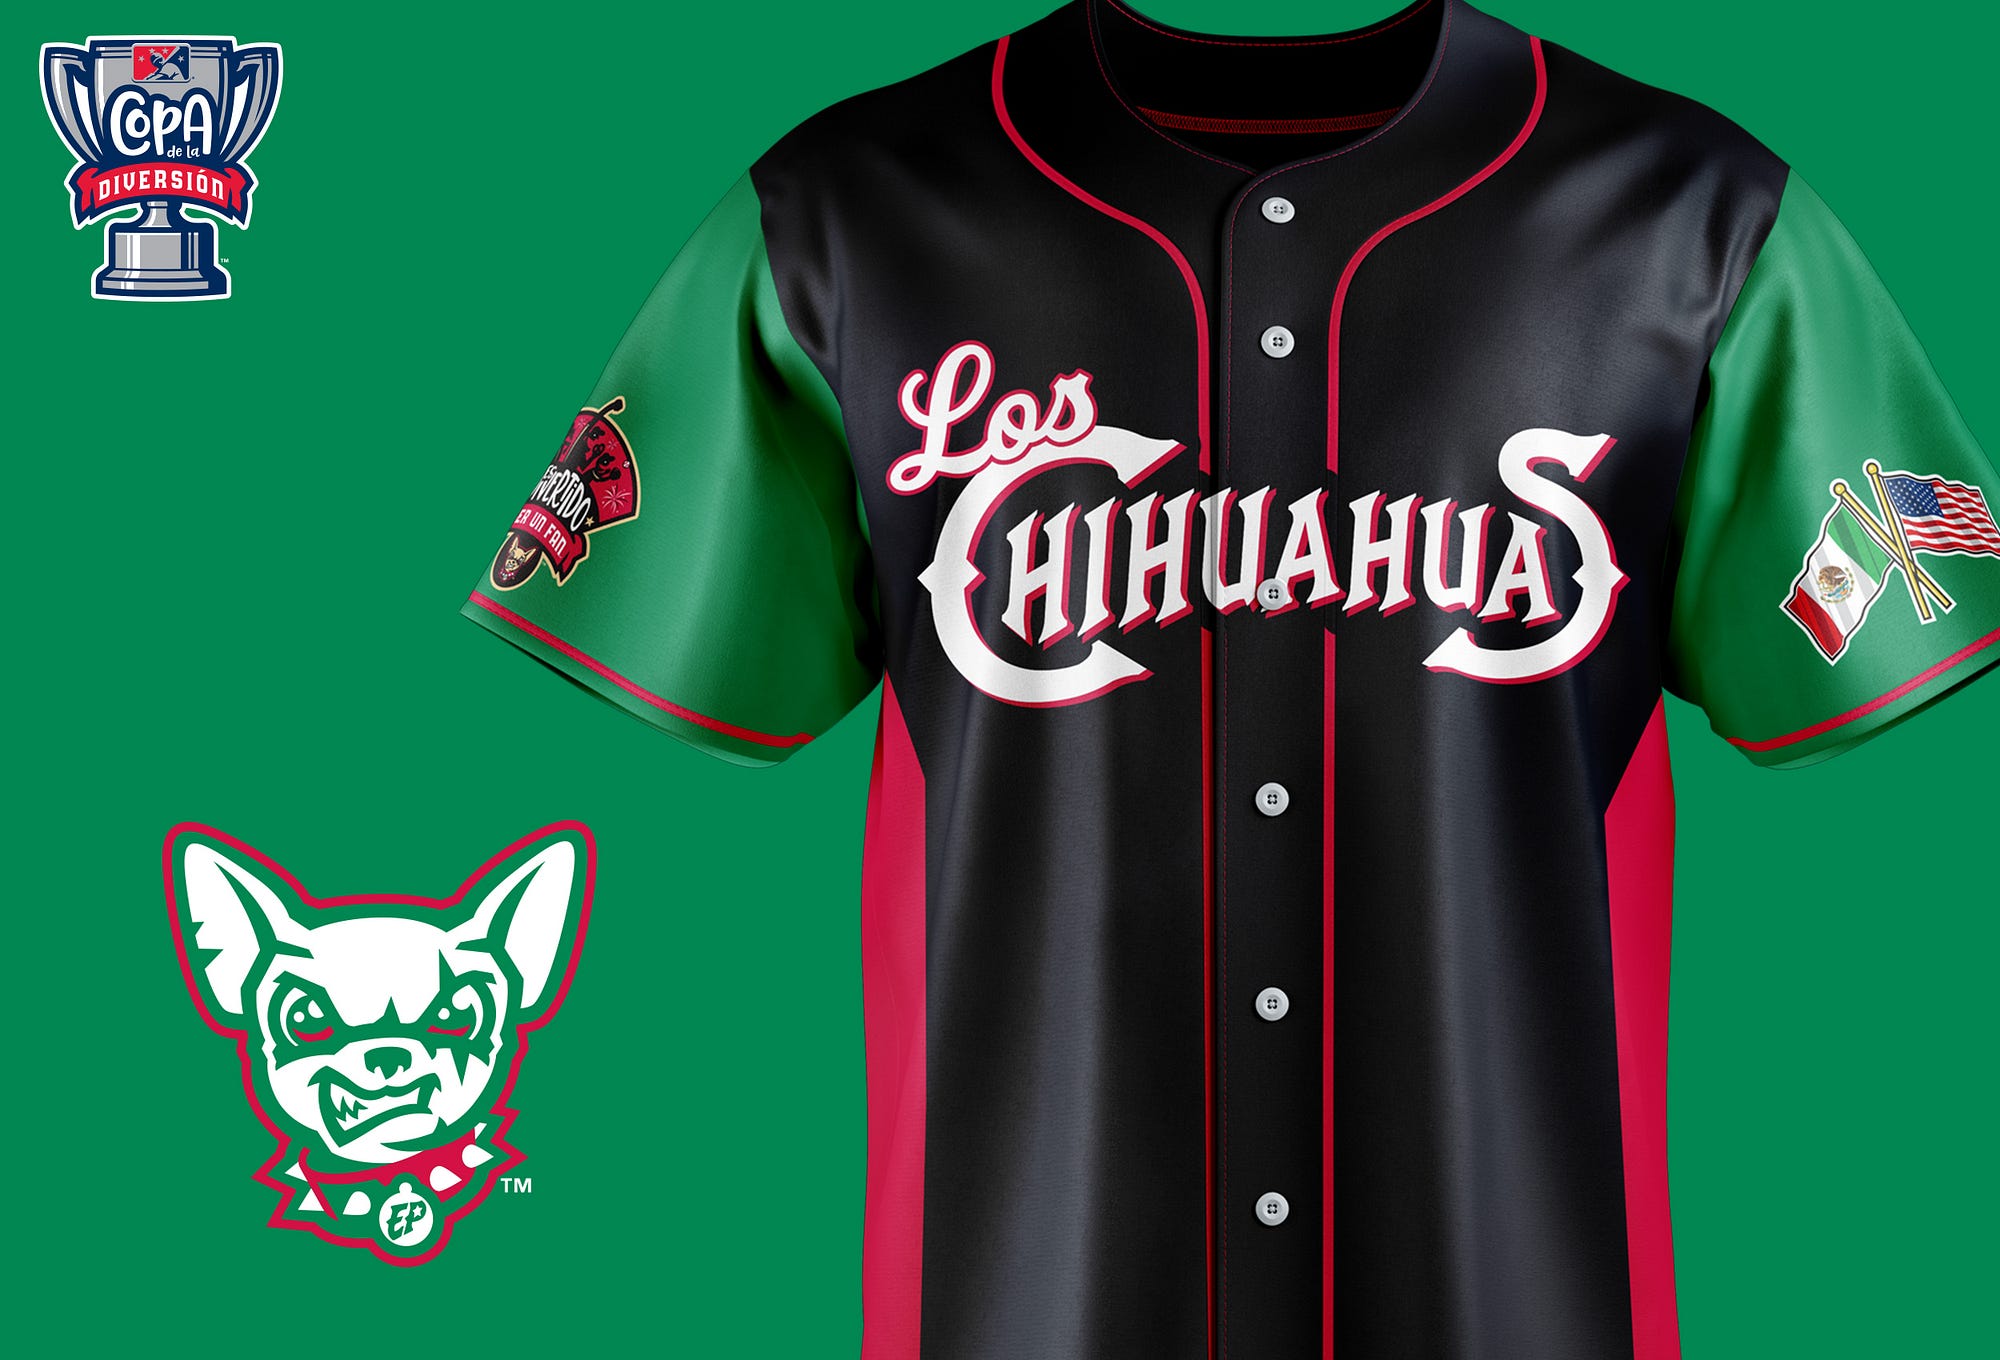 El Paso Chihuahuas Copa Branding. The “Chihuahuas” name was chosen